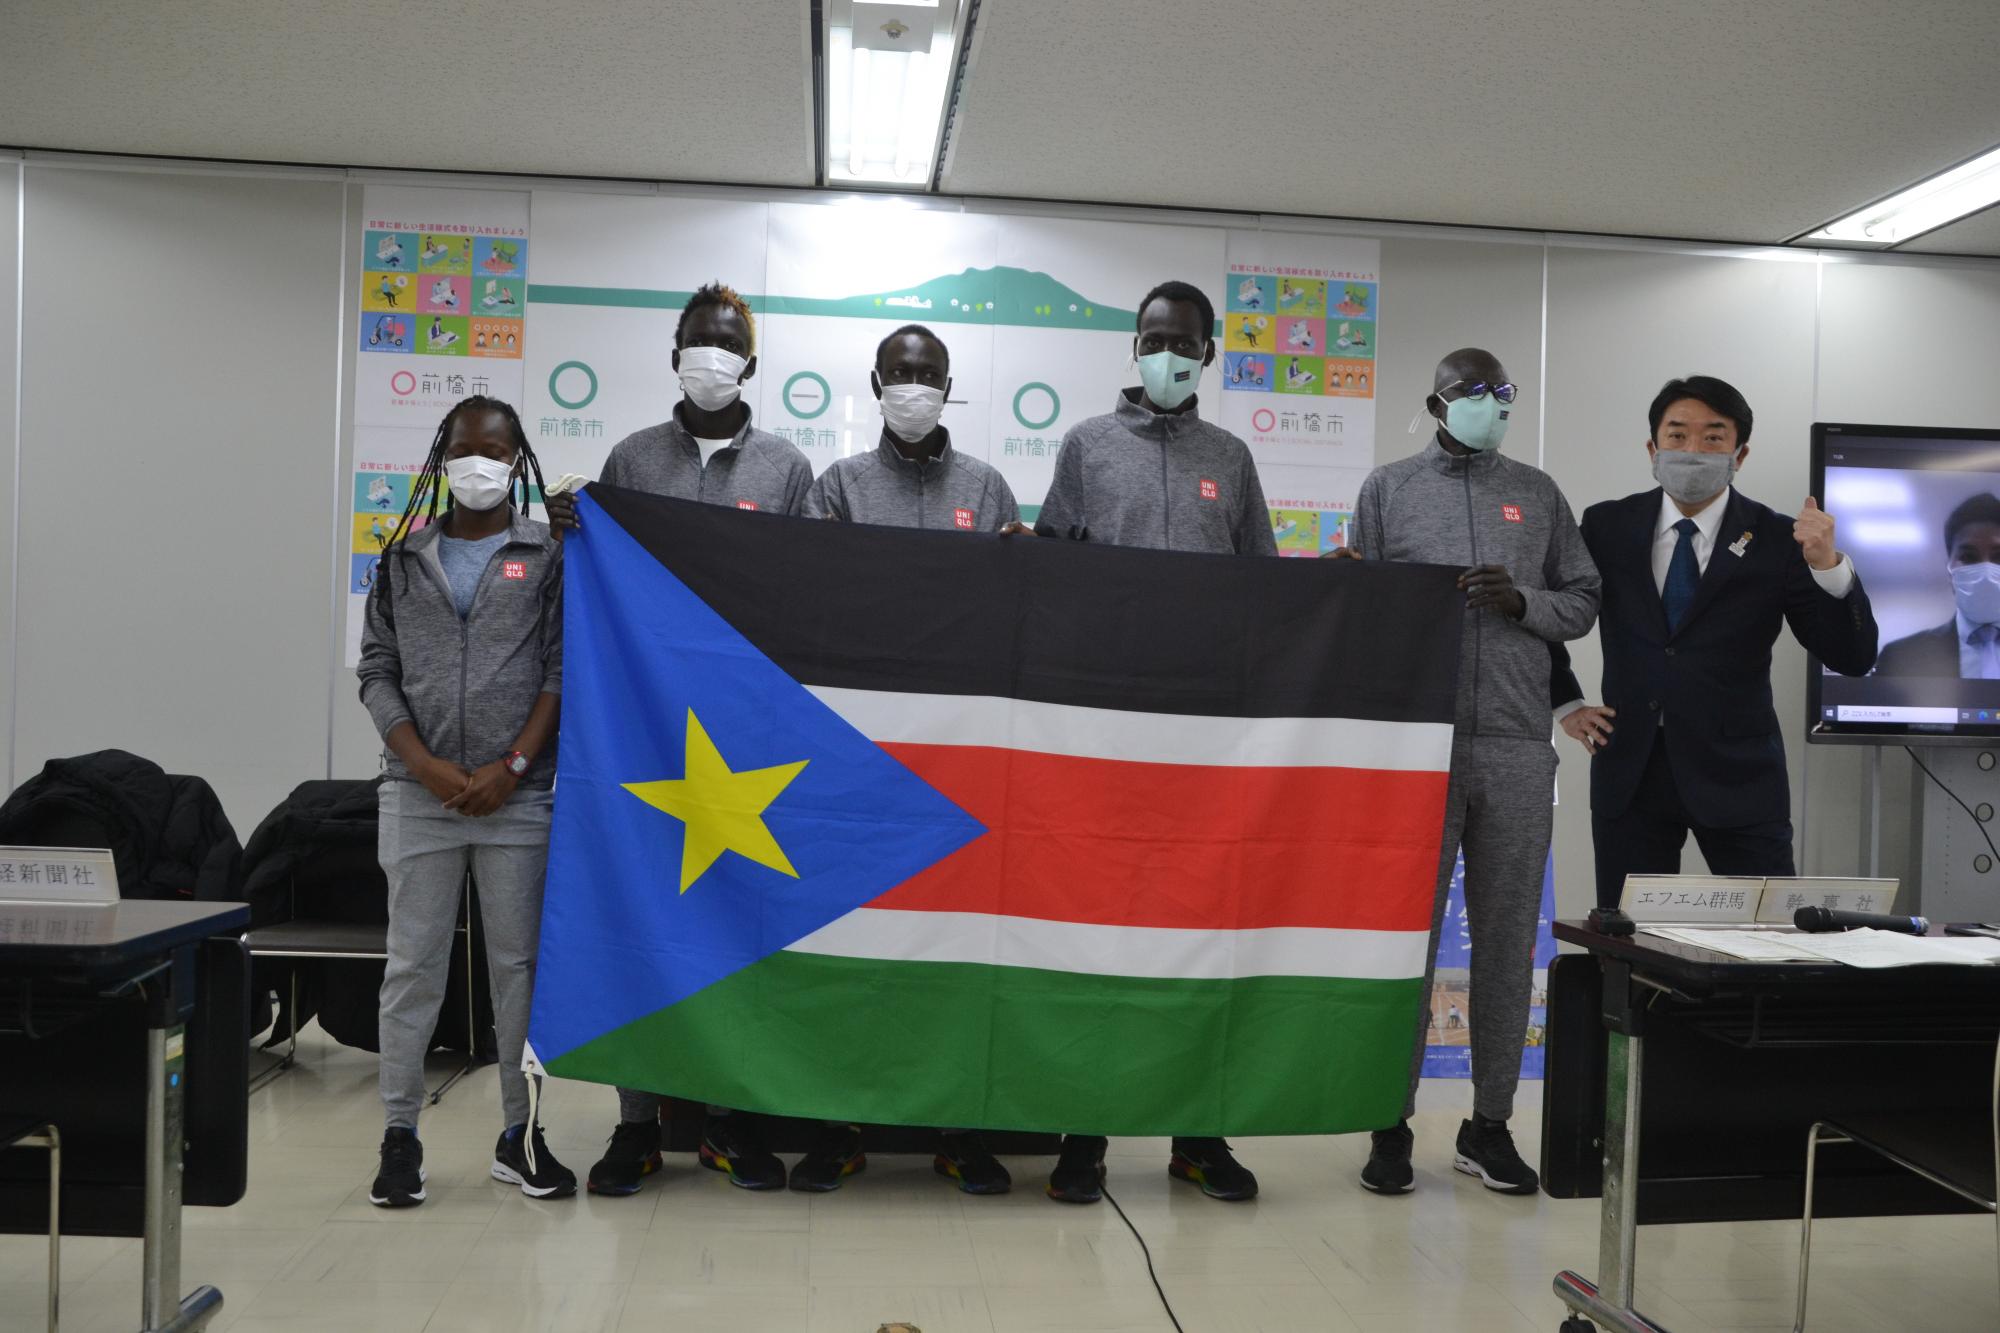 東京2020大会以降の南スーダンとのスポーツ交流計画発表